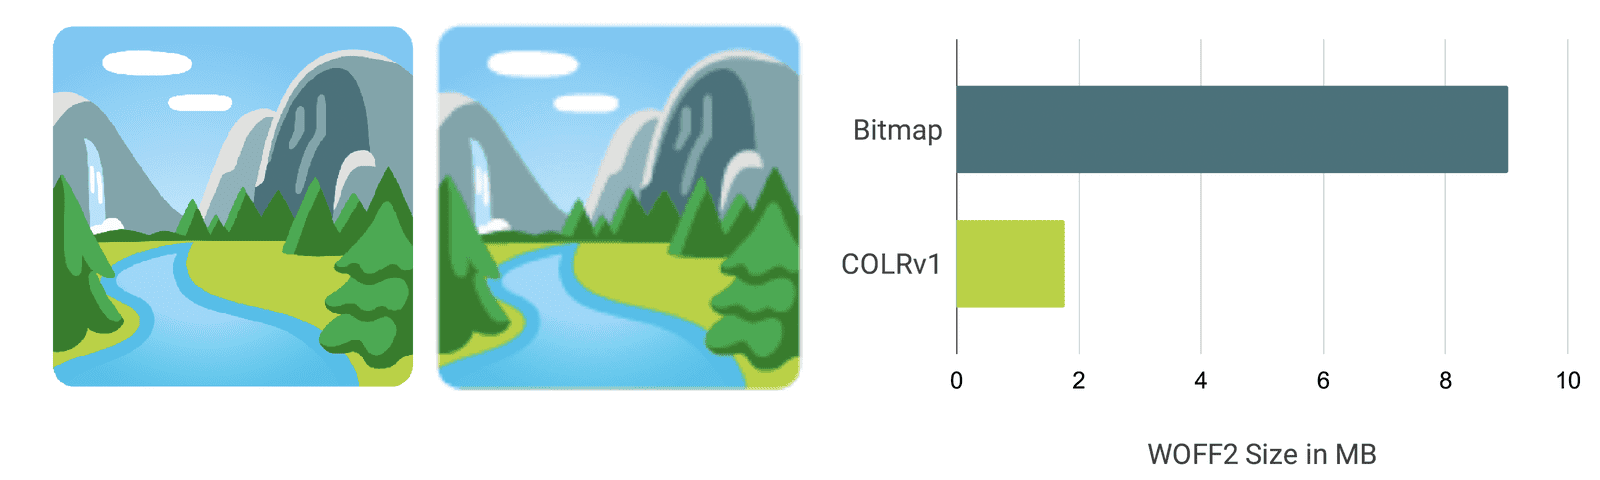 比较可视化图表和条形图，显示 COLRv1 字体更清晰和更小。